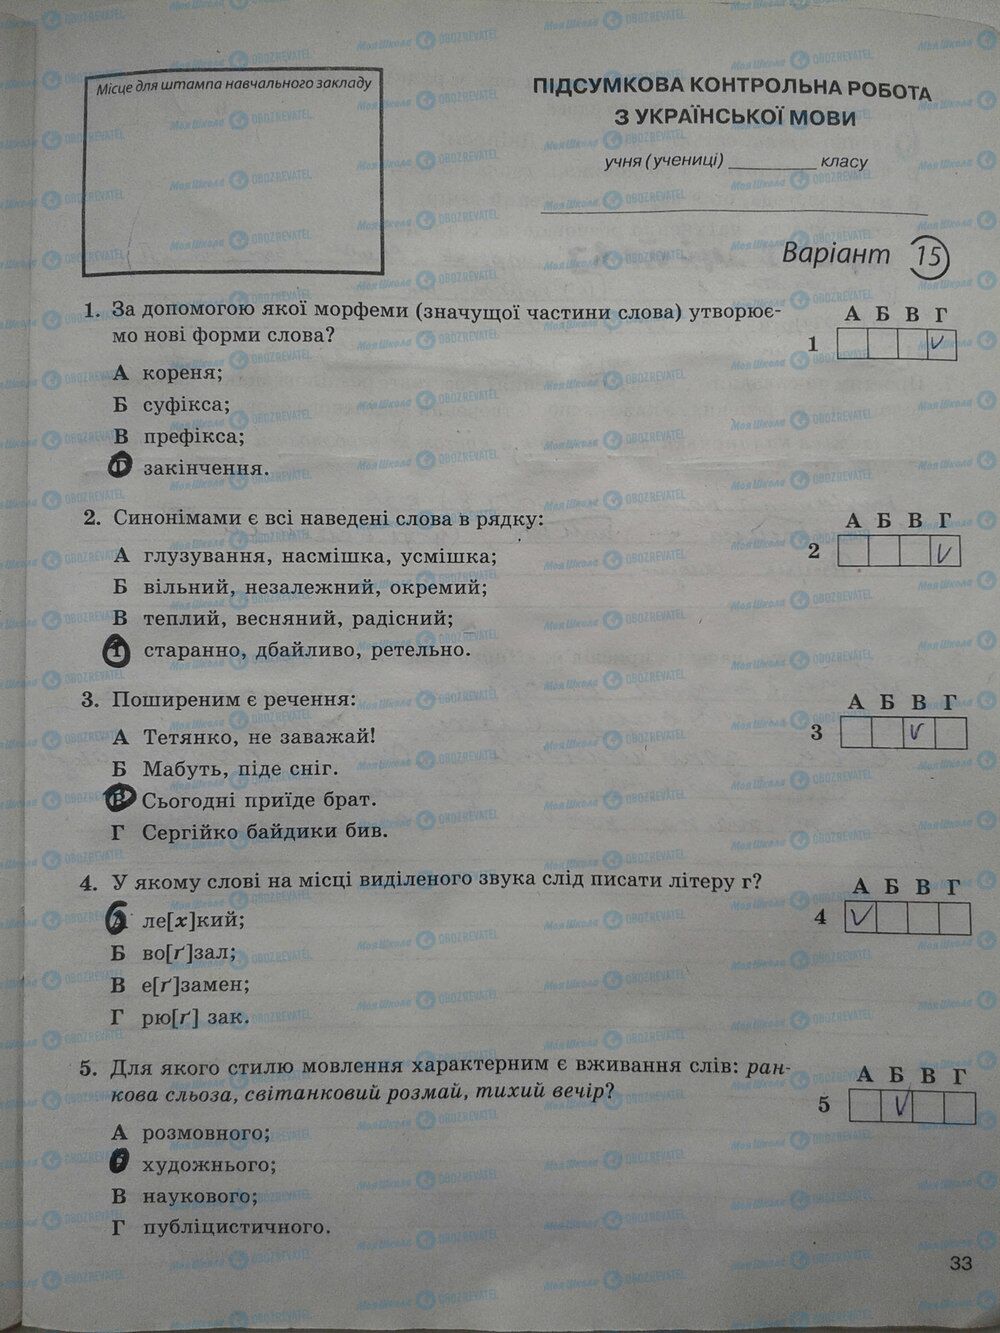 ГДЗ Укр мова 5 класс страница стр. 33